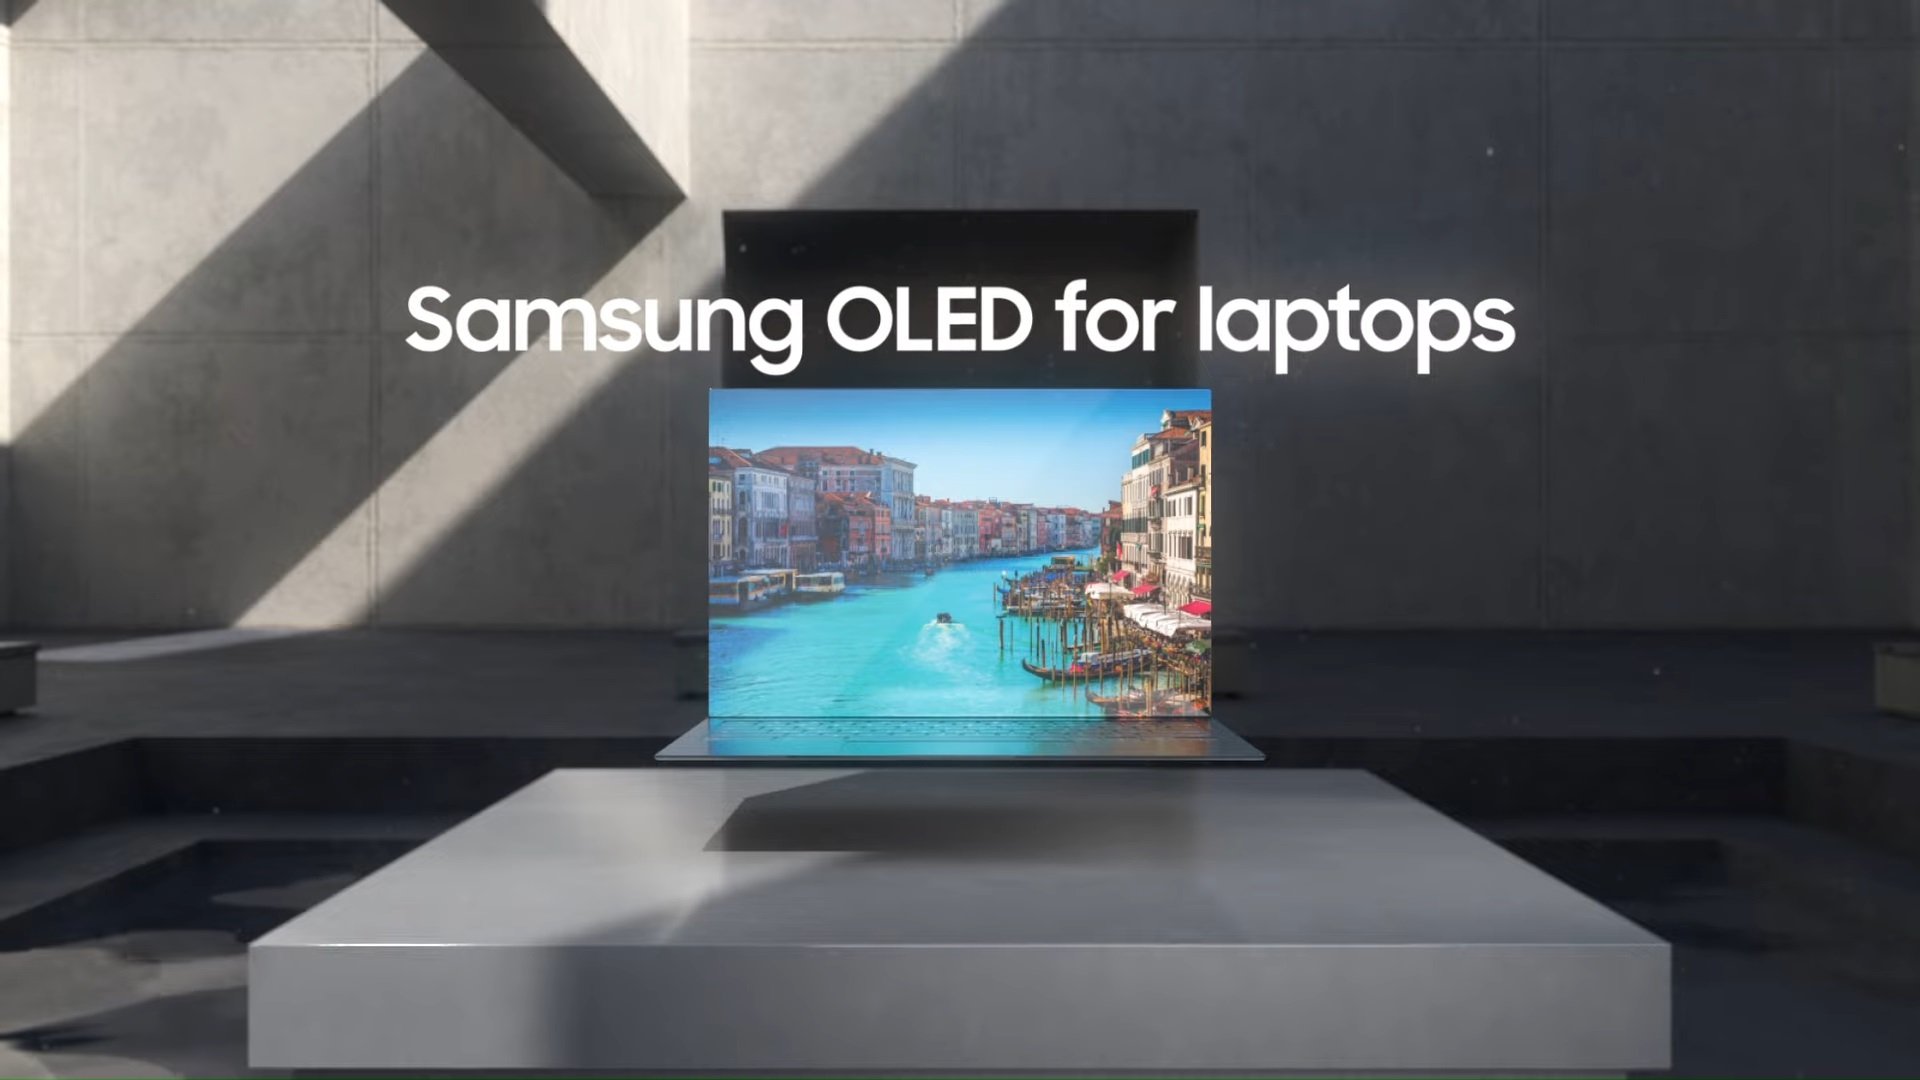 Samsung инвестирует в миллиарды для улучшения OLED производства для Apple iPads, MacBooks